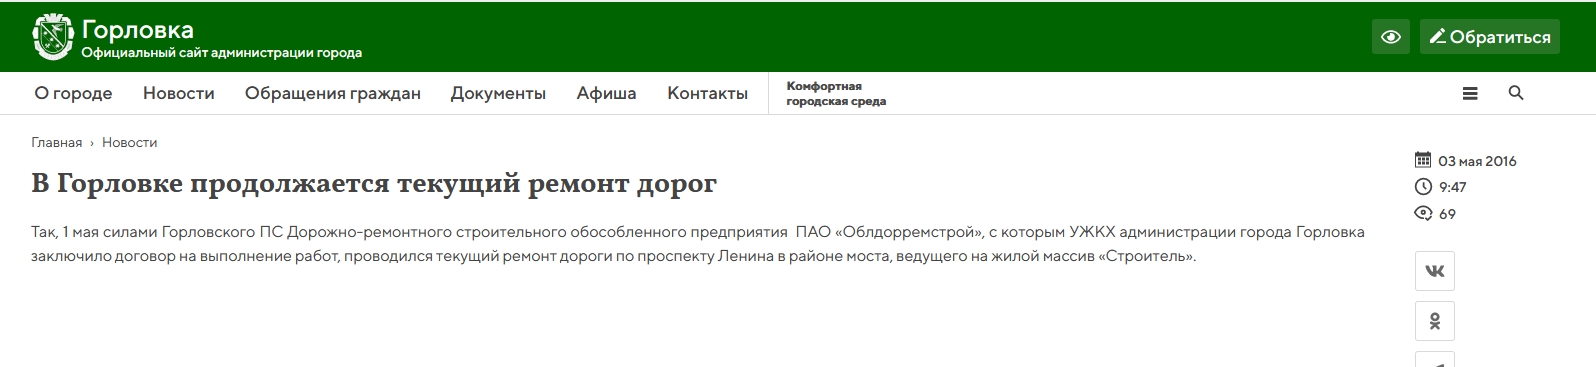 В Селидово дороги будет ремонтировать фирма, вероятно работающая в т.н. “ДНР”. Заплатят 4,2 млн грн из бюджета 1